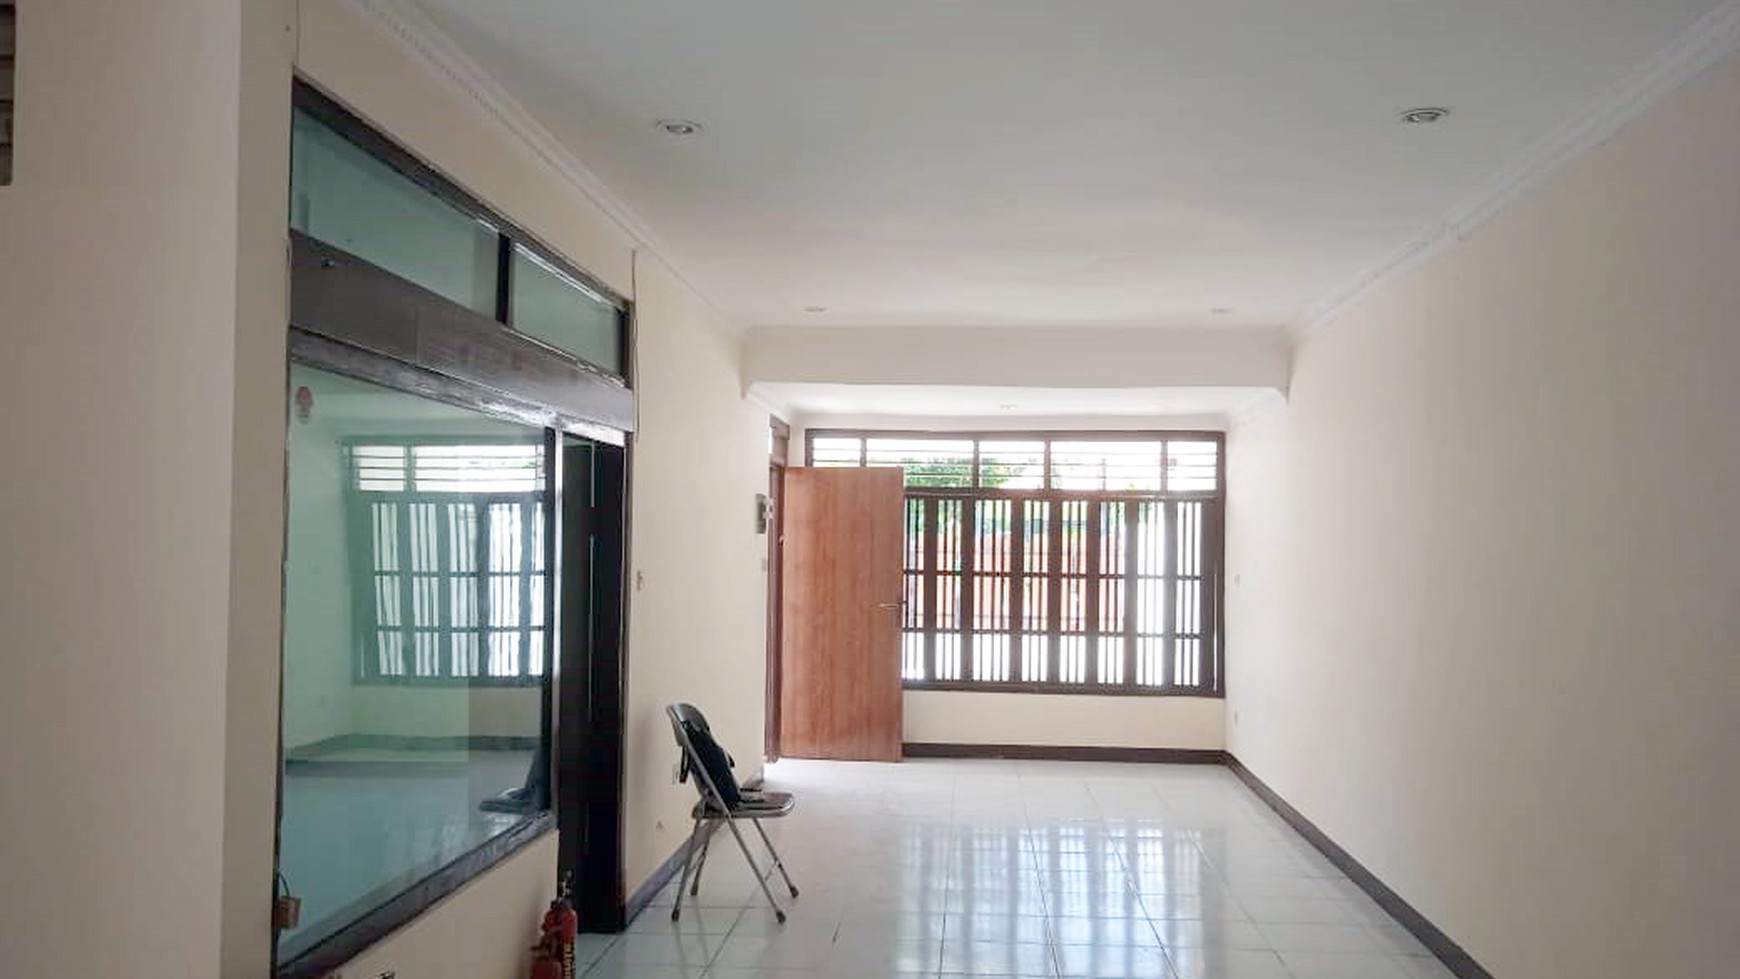 Rumah di Jemur Andayani Surabaya Selatan, Cocok untuk rumah tinggal/kantor, Bisa disewakan !!!